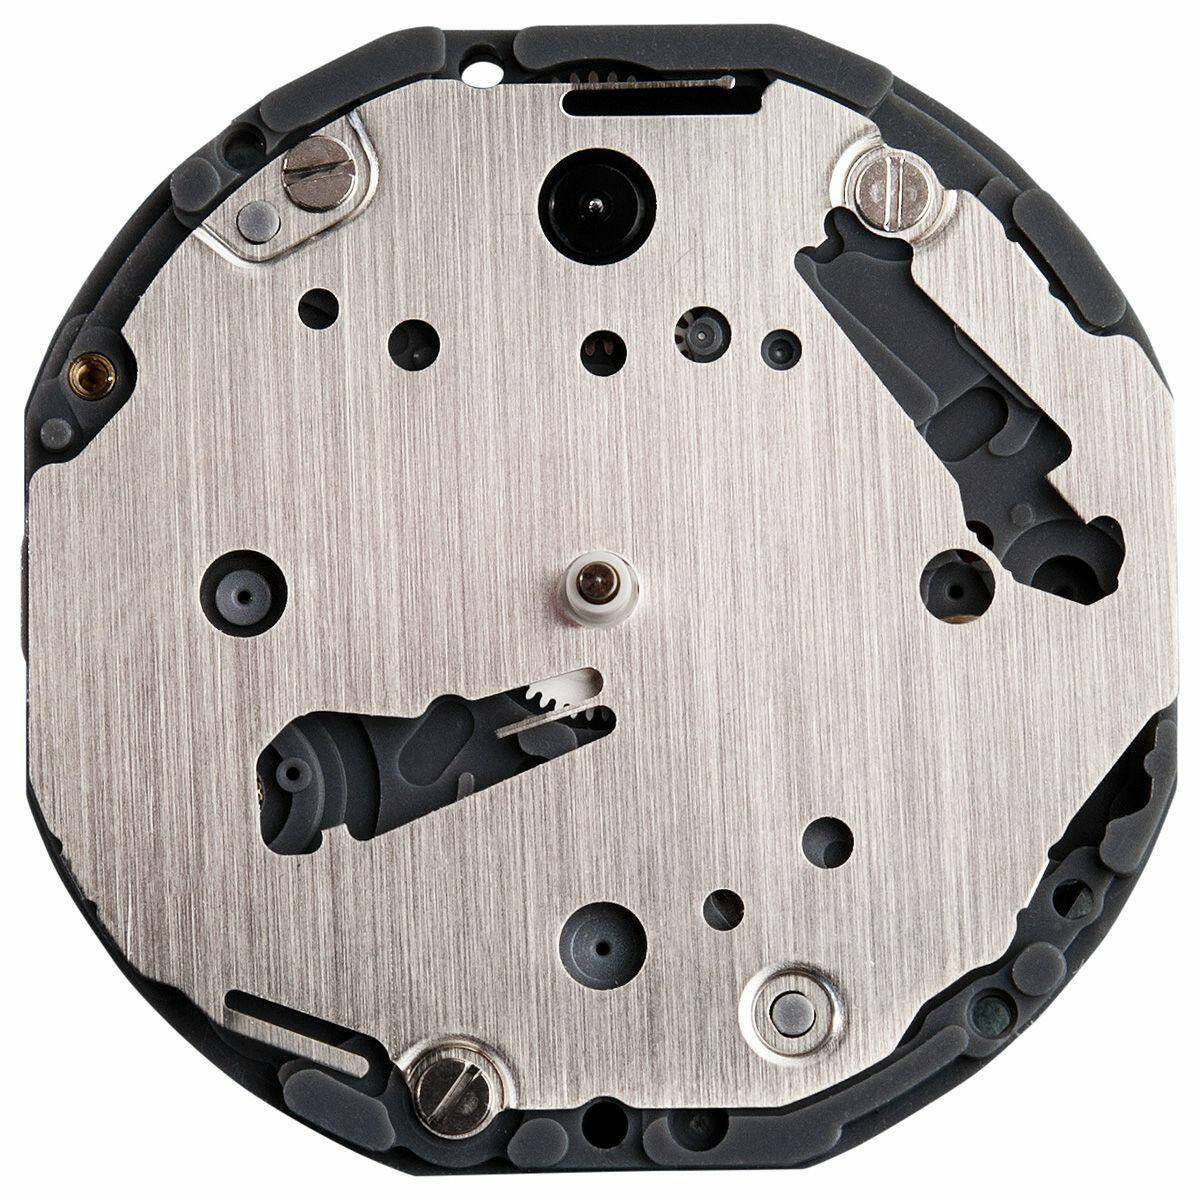 Oryginalny produkt - MECHANIZM SEIKO VD78A  - Sklep z  częściami i narzędziami zegarmistrzowskimi.